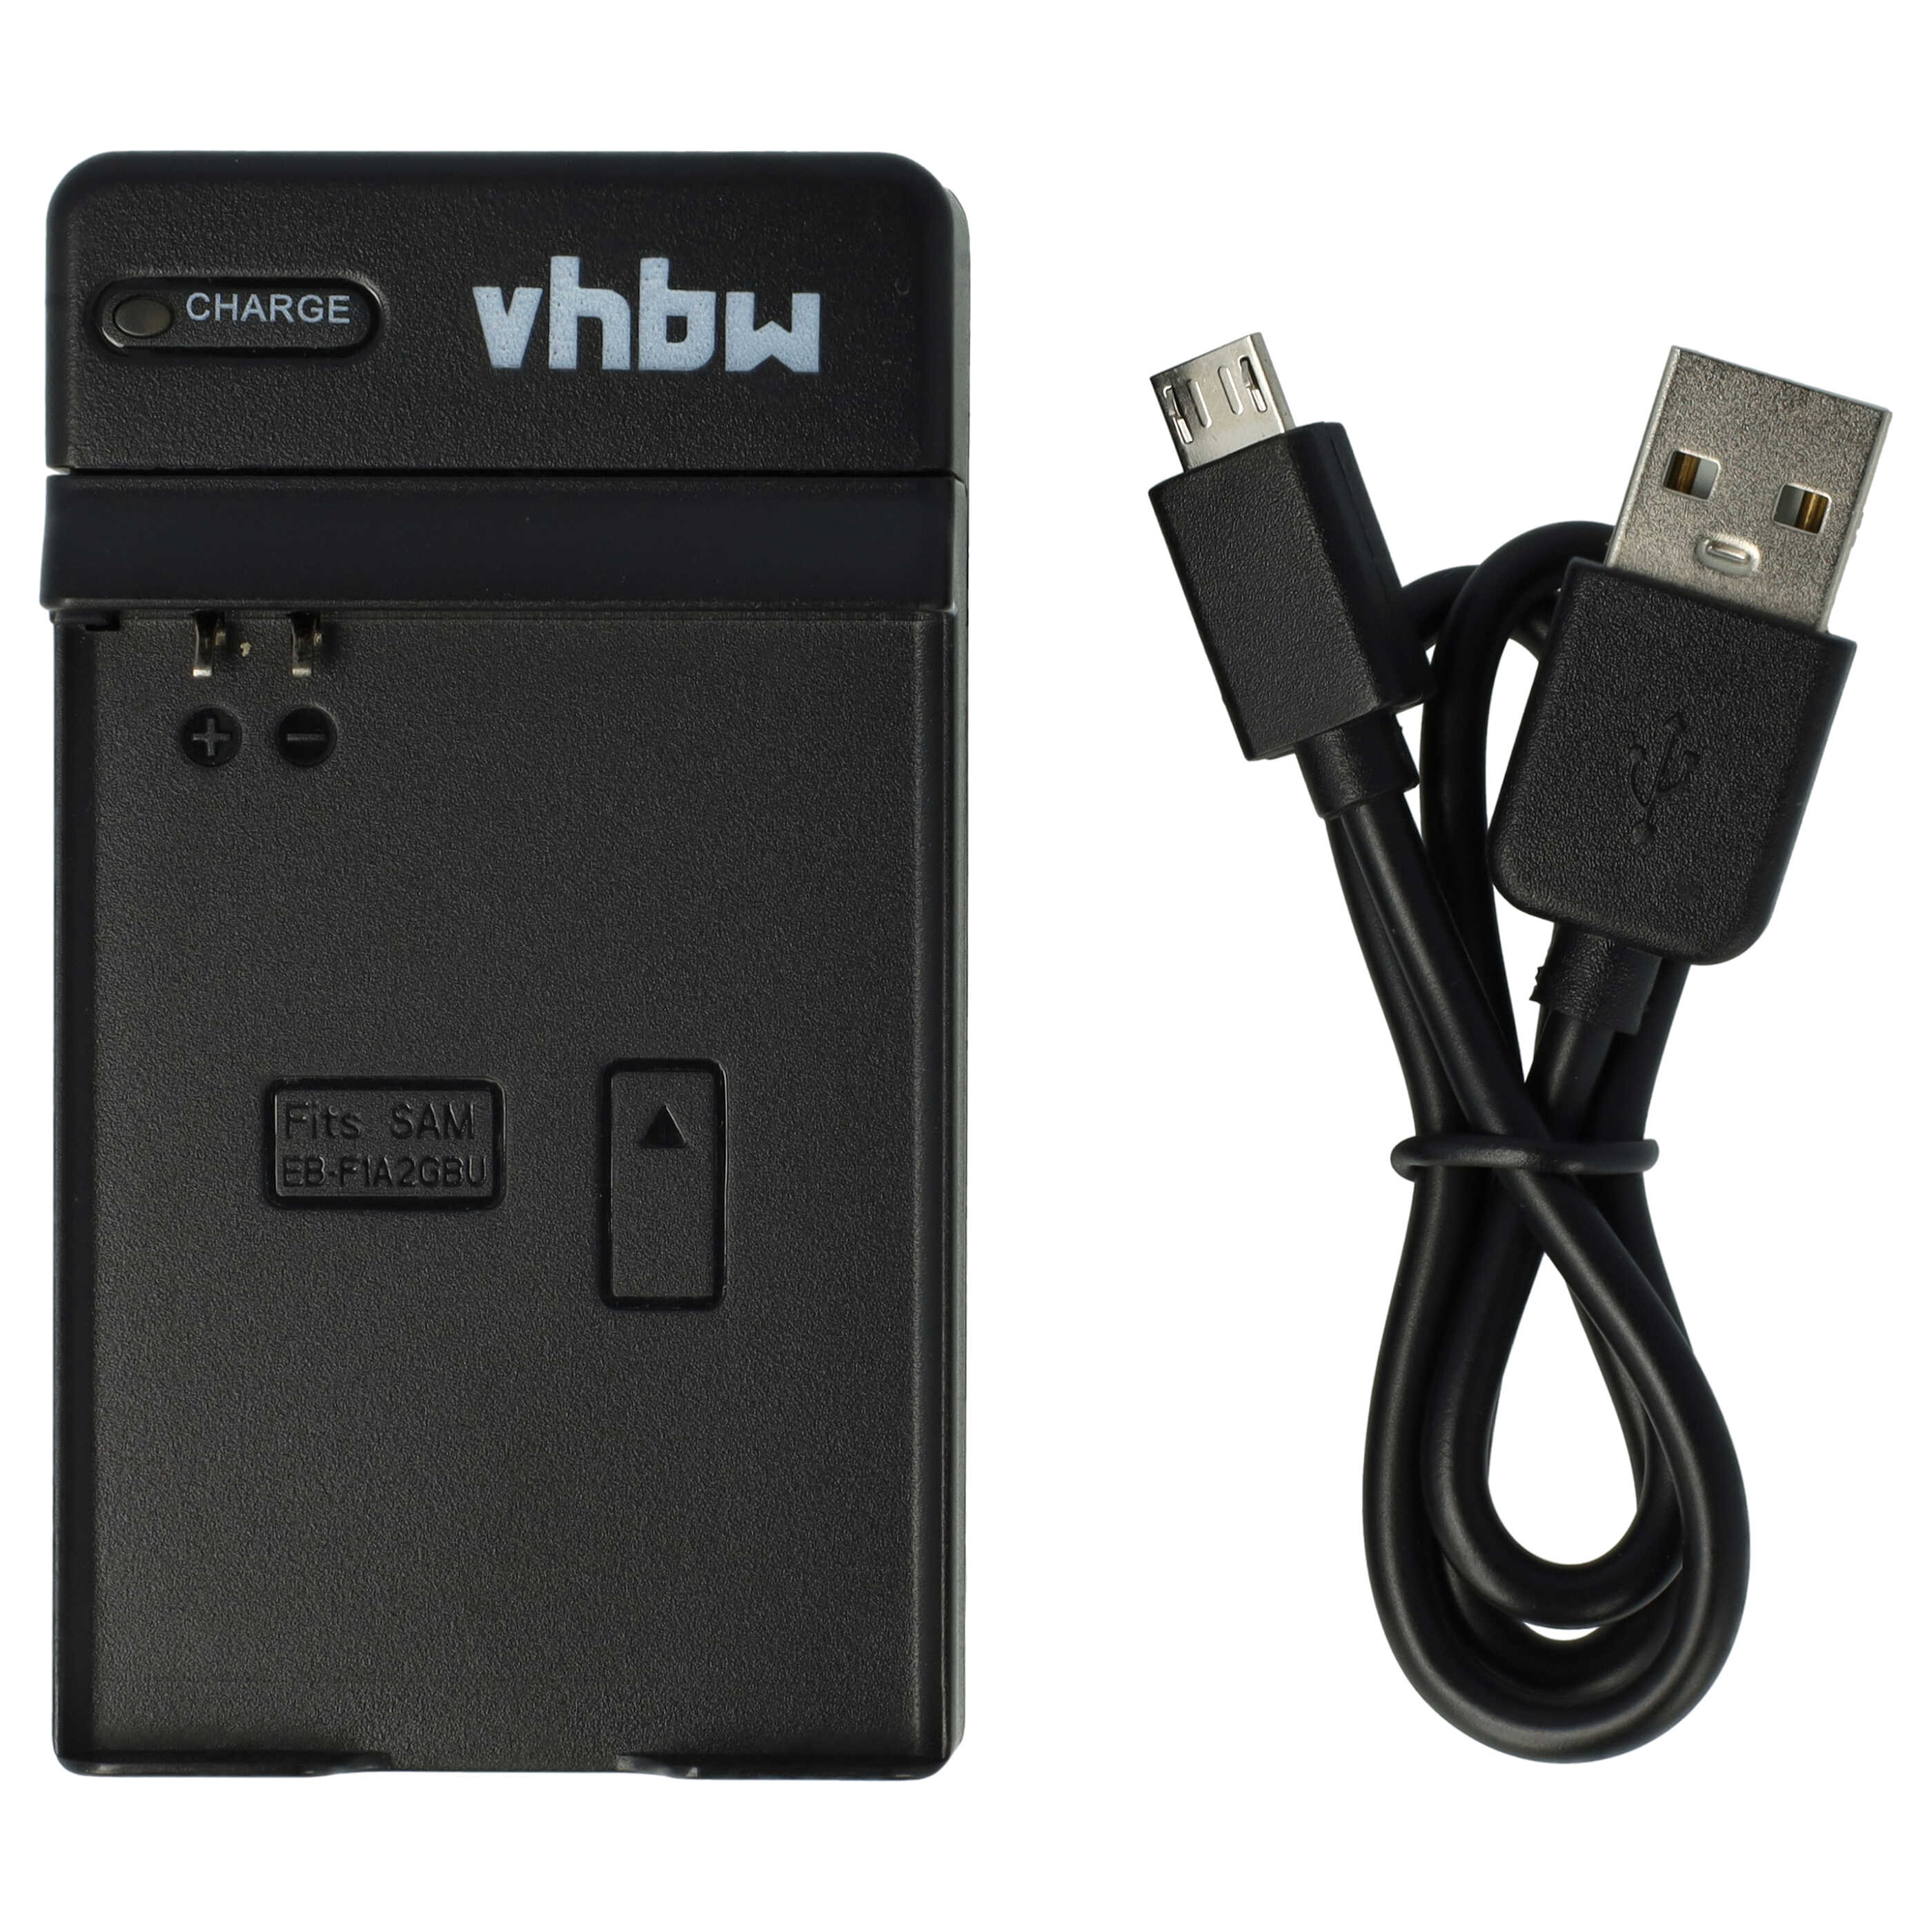 Station de charge micro USB pour batterie de smartphone Samsung - socle + câble, 40 cm